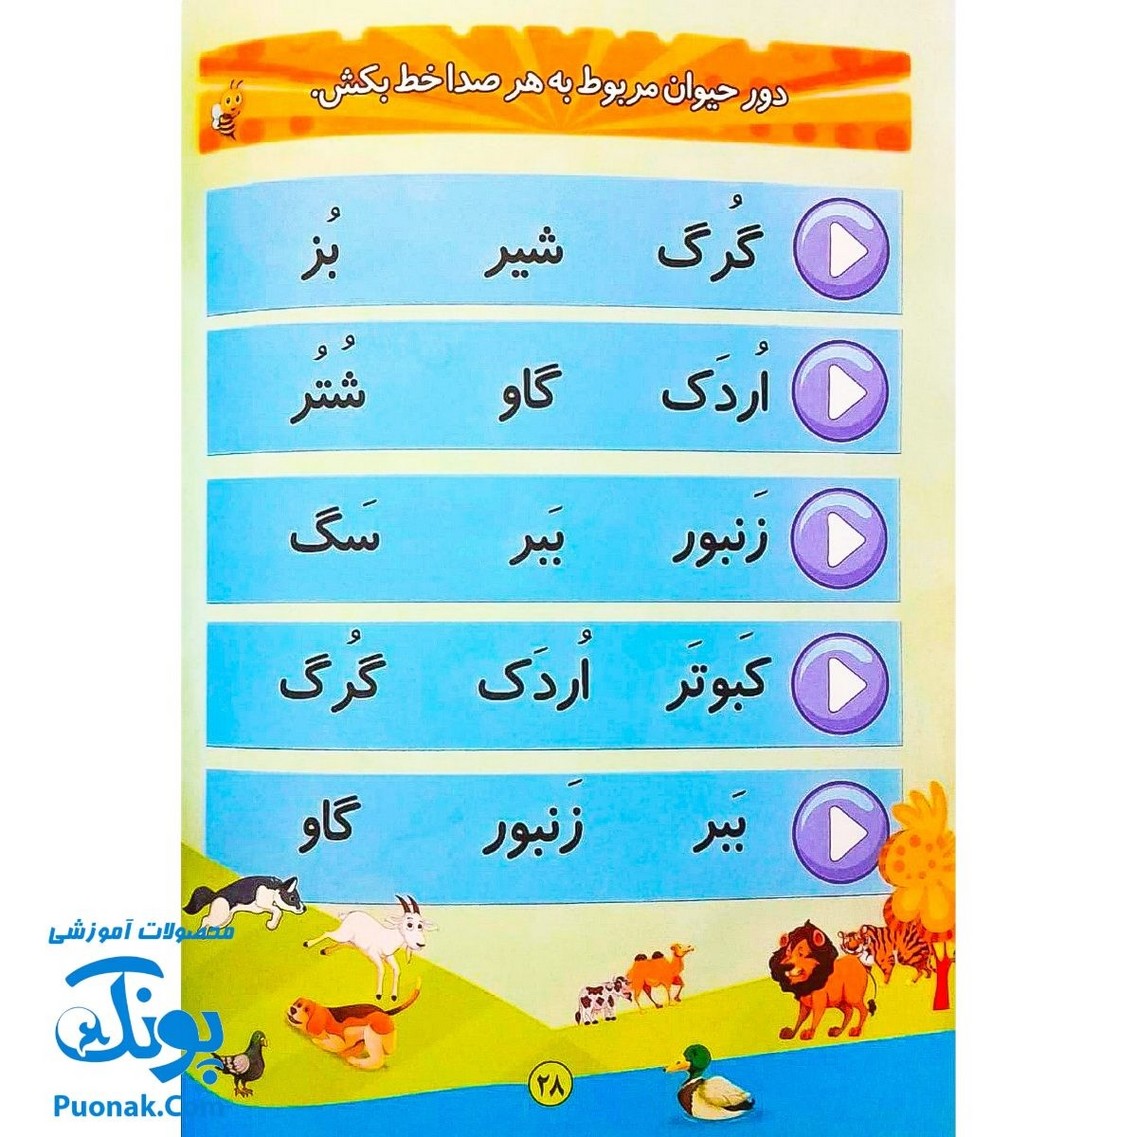 کتاب سخنگوی الفبا با لی لی (کتاب آموزش الفبای فارسی سخنگو متحرک، موزیکال، سه بعدی)